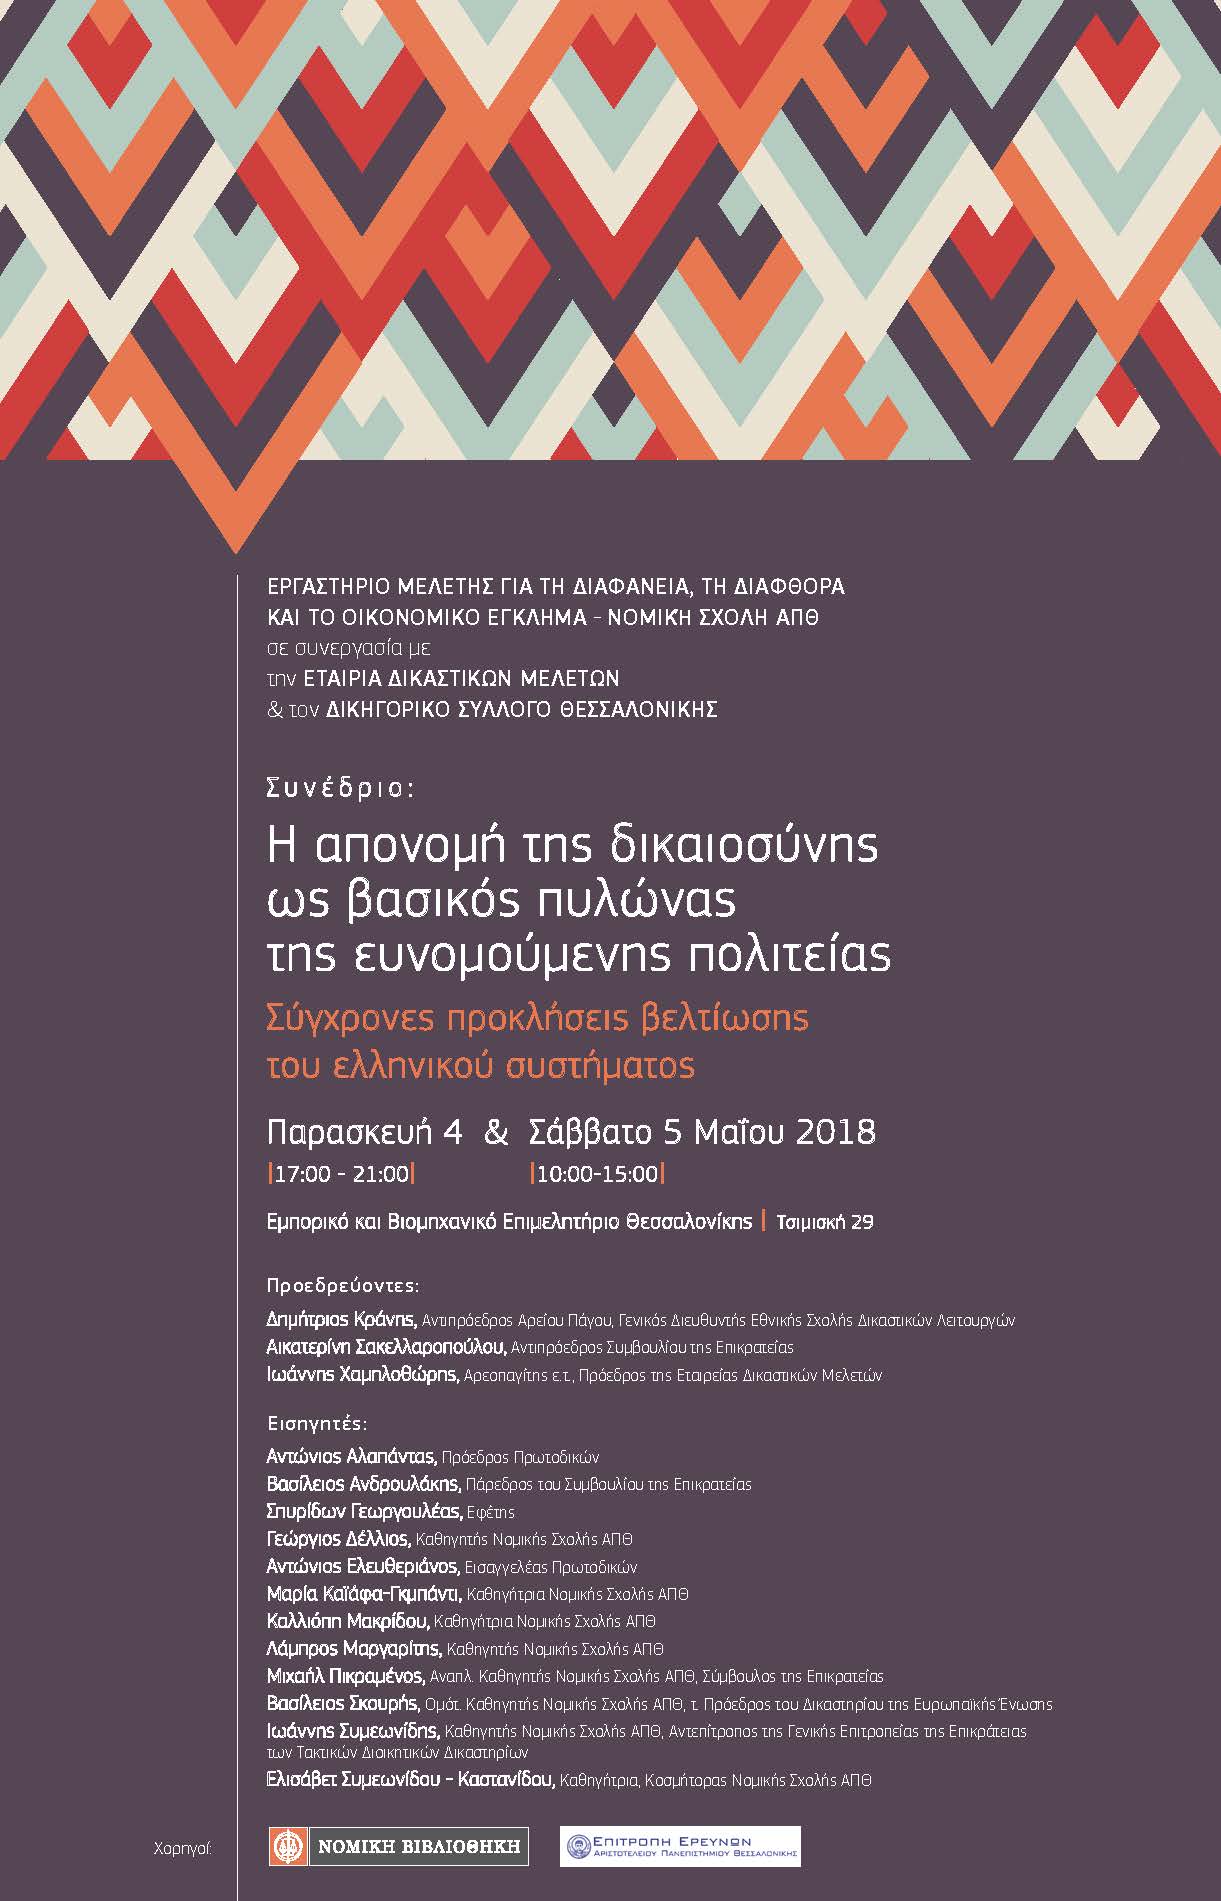 Συνέδριο: «Η απονομή της δικαιοσύνης ως βασικός πυλώνας της ευνομούμενης πολιτείας: Σύγχρονες προκλήσεις βελτίωσης του ελληνικού συστήματος», Παρασκευή 4 & Σάββατο 5 Μαΐου 2018, Εμπορικό και Βιομηχανικό Επιμελητήριο Θεσσαλονίκης